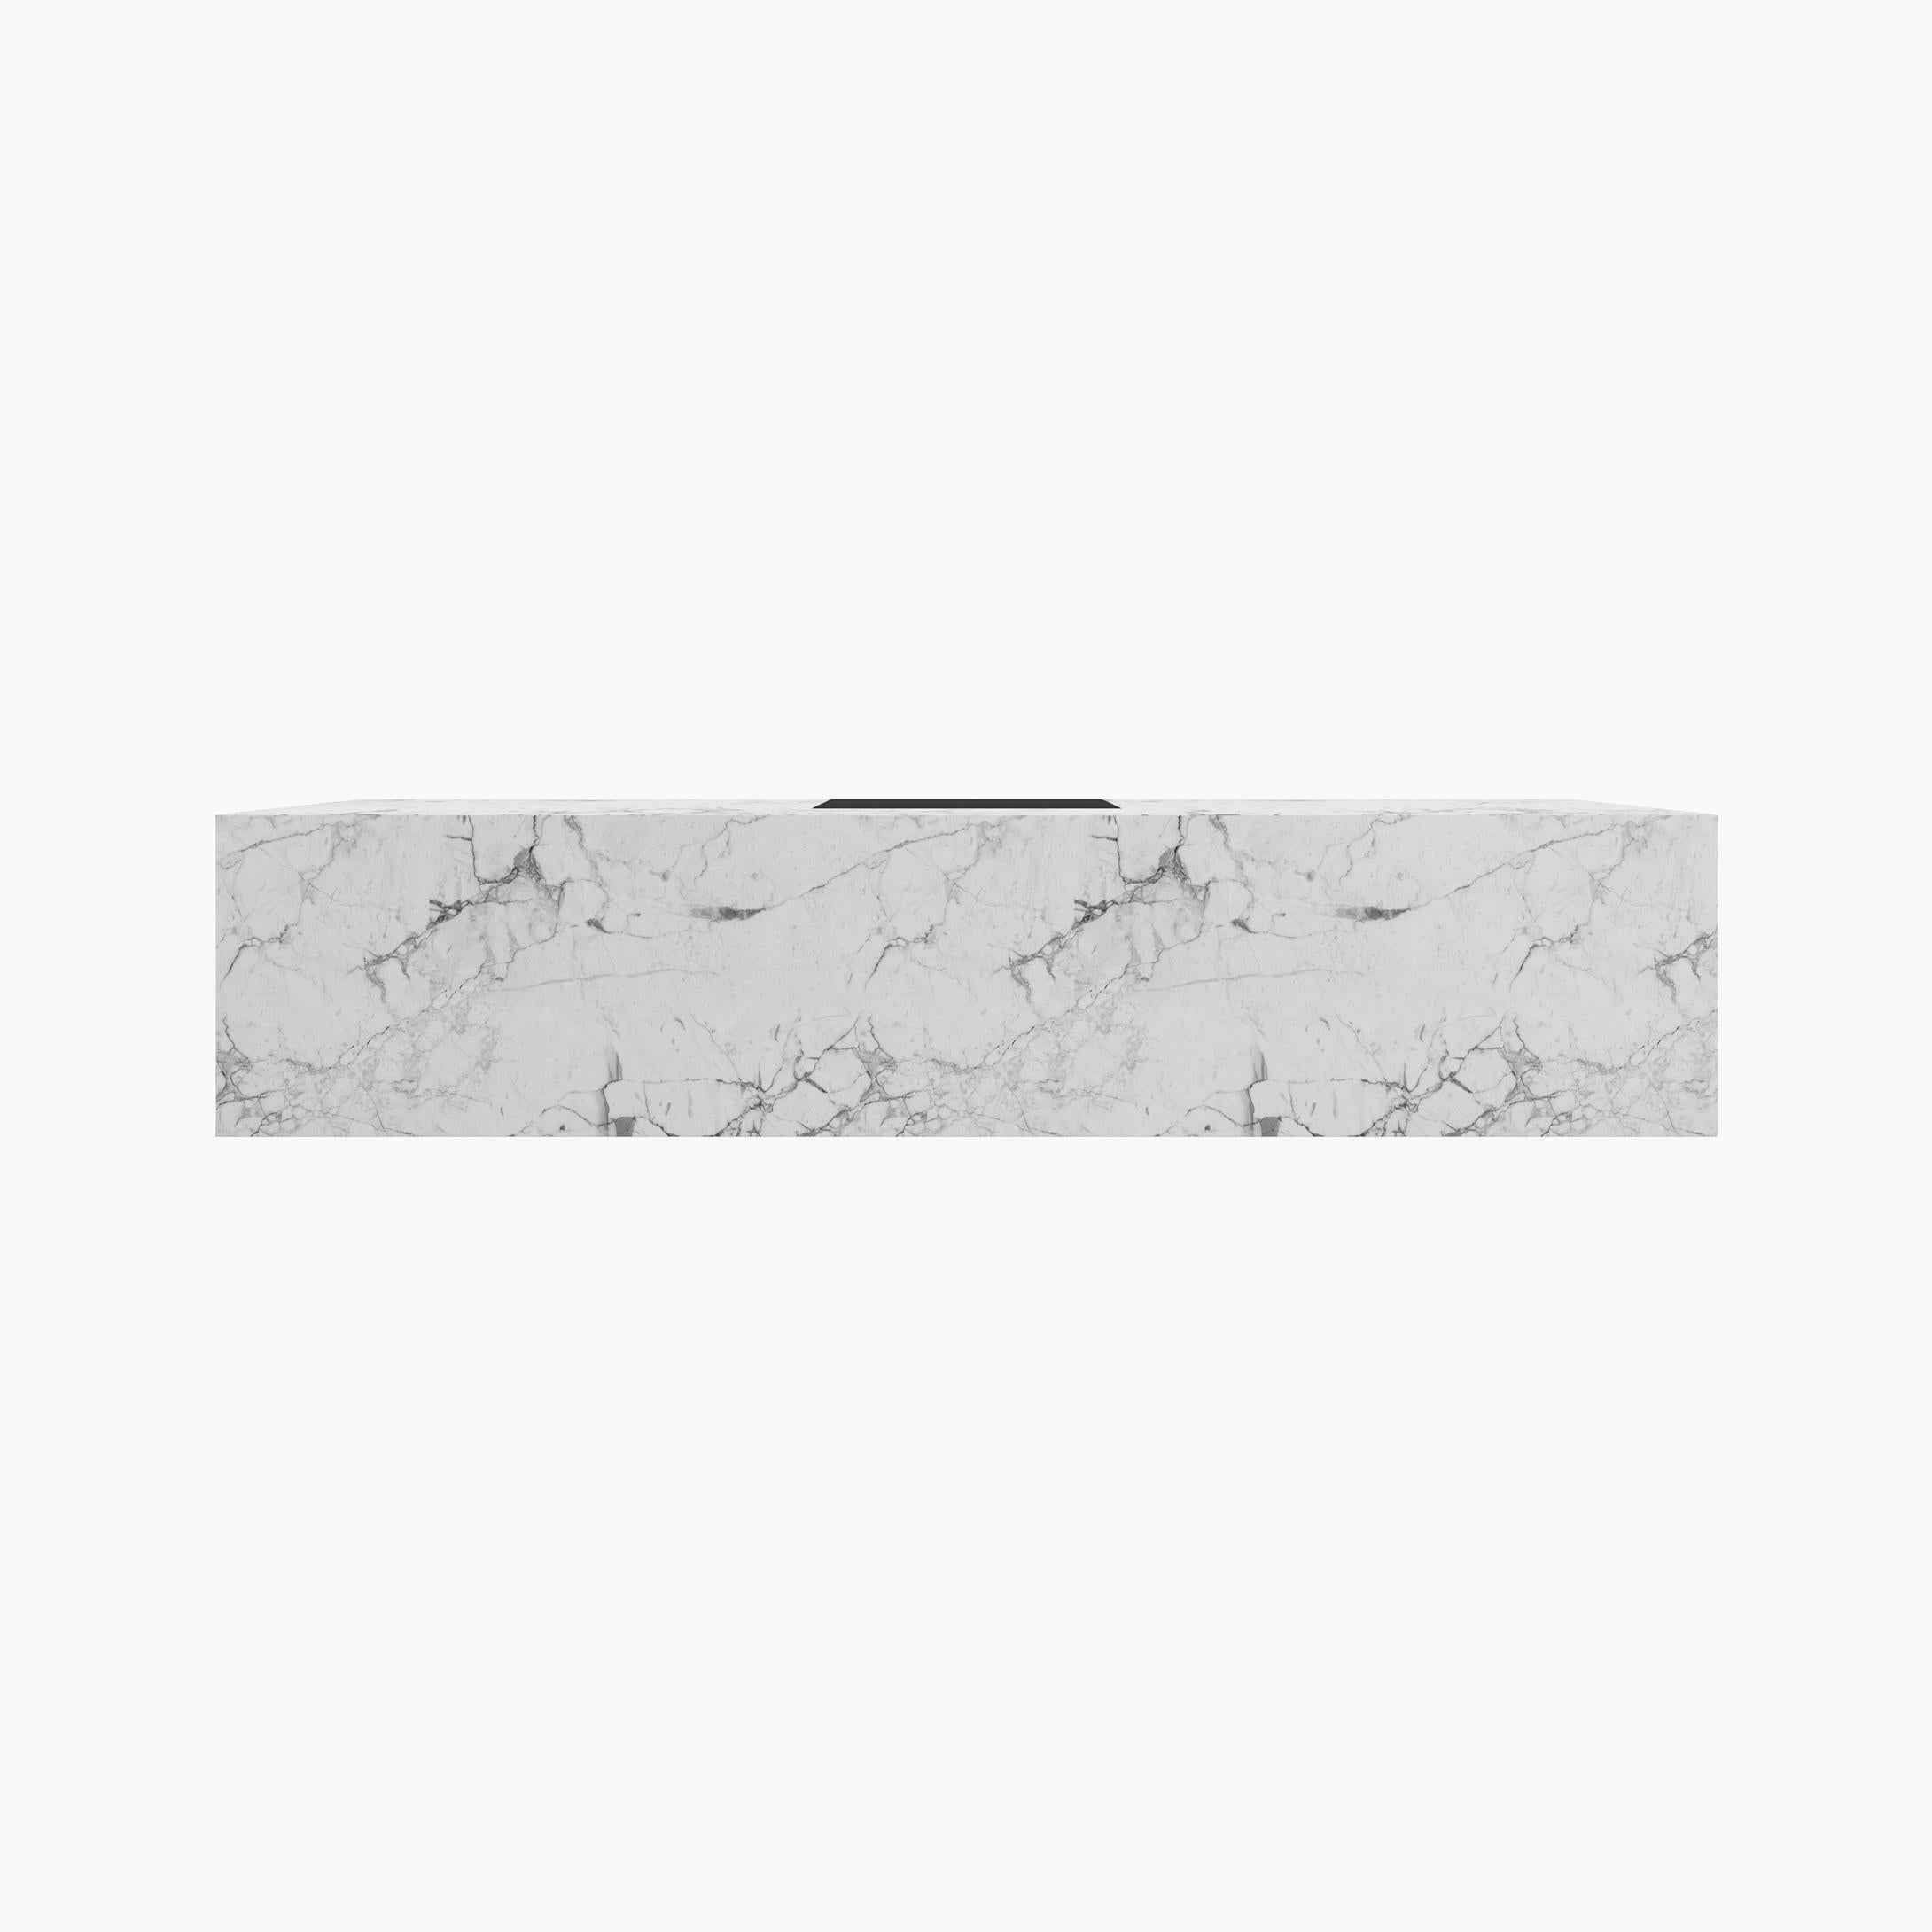 Européen Bureau cubique, marbre blanc, tiroir en cuir 400x75x75cm, Allemagne, fabrication artisanale pc1/1 en vente